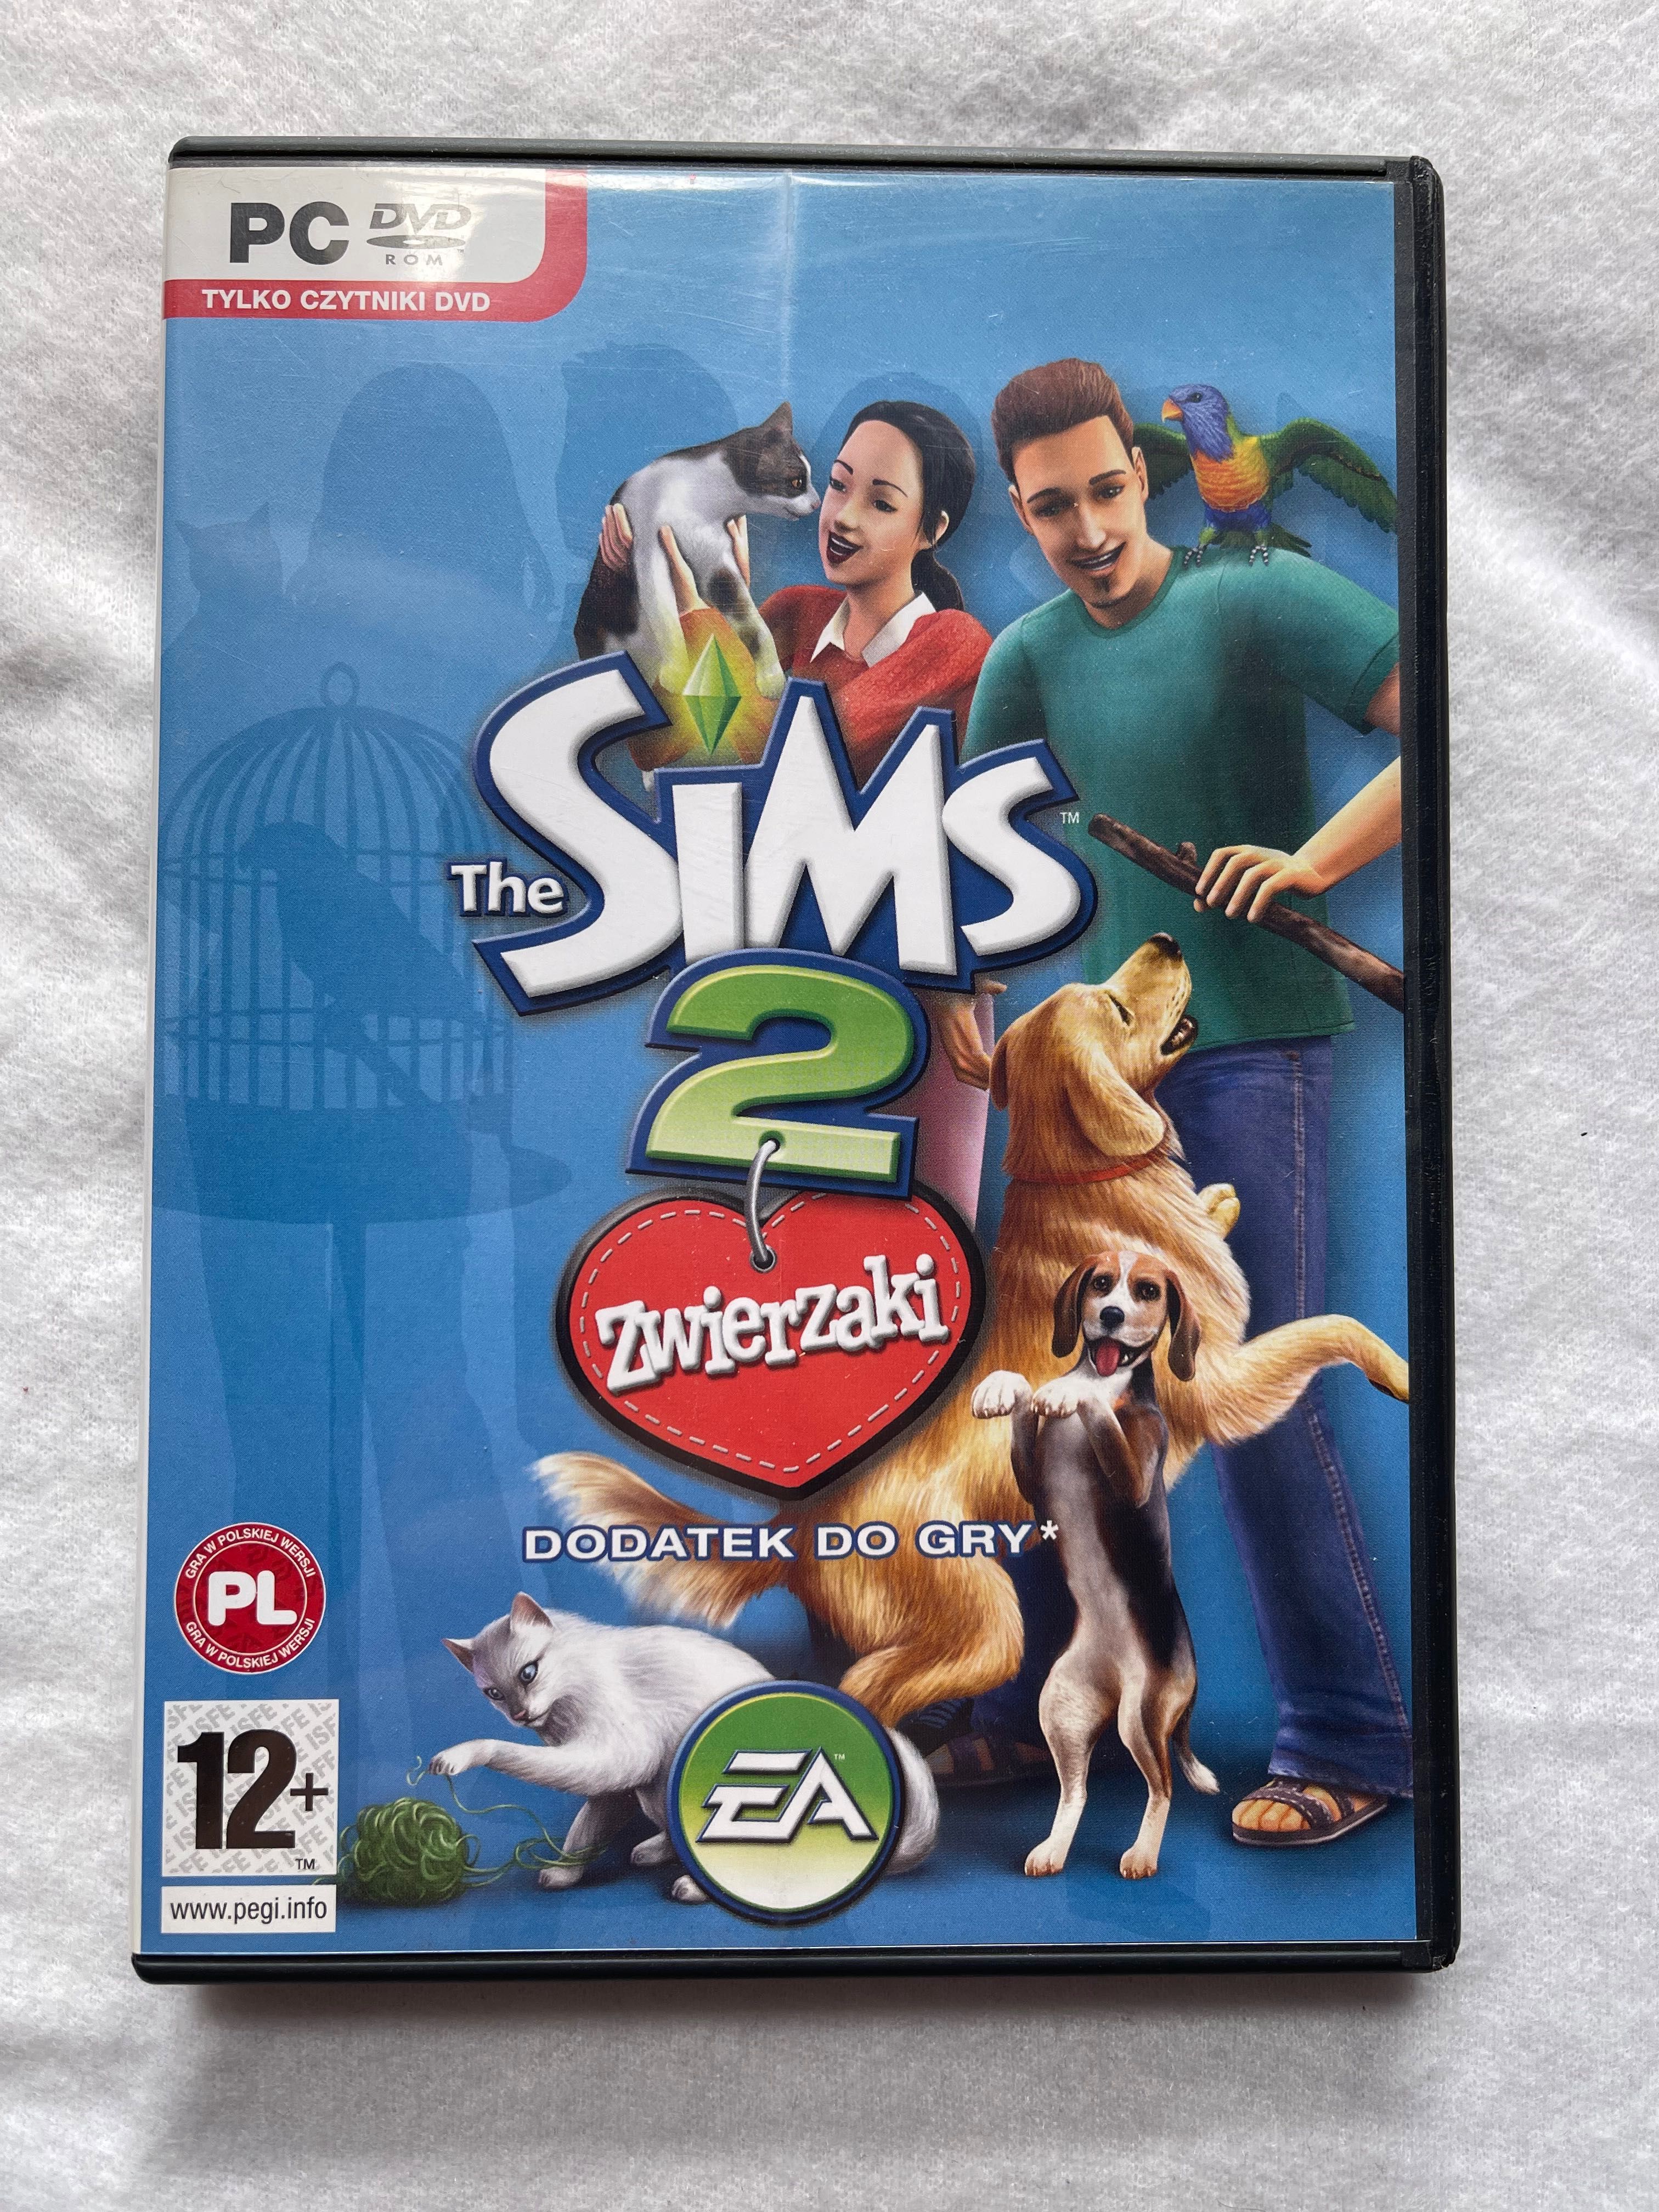 The Sims 2 - zwierzaki